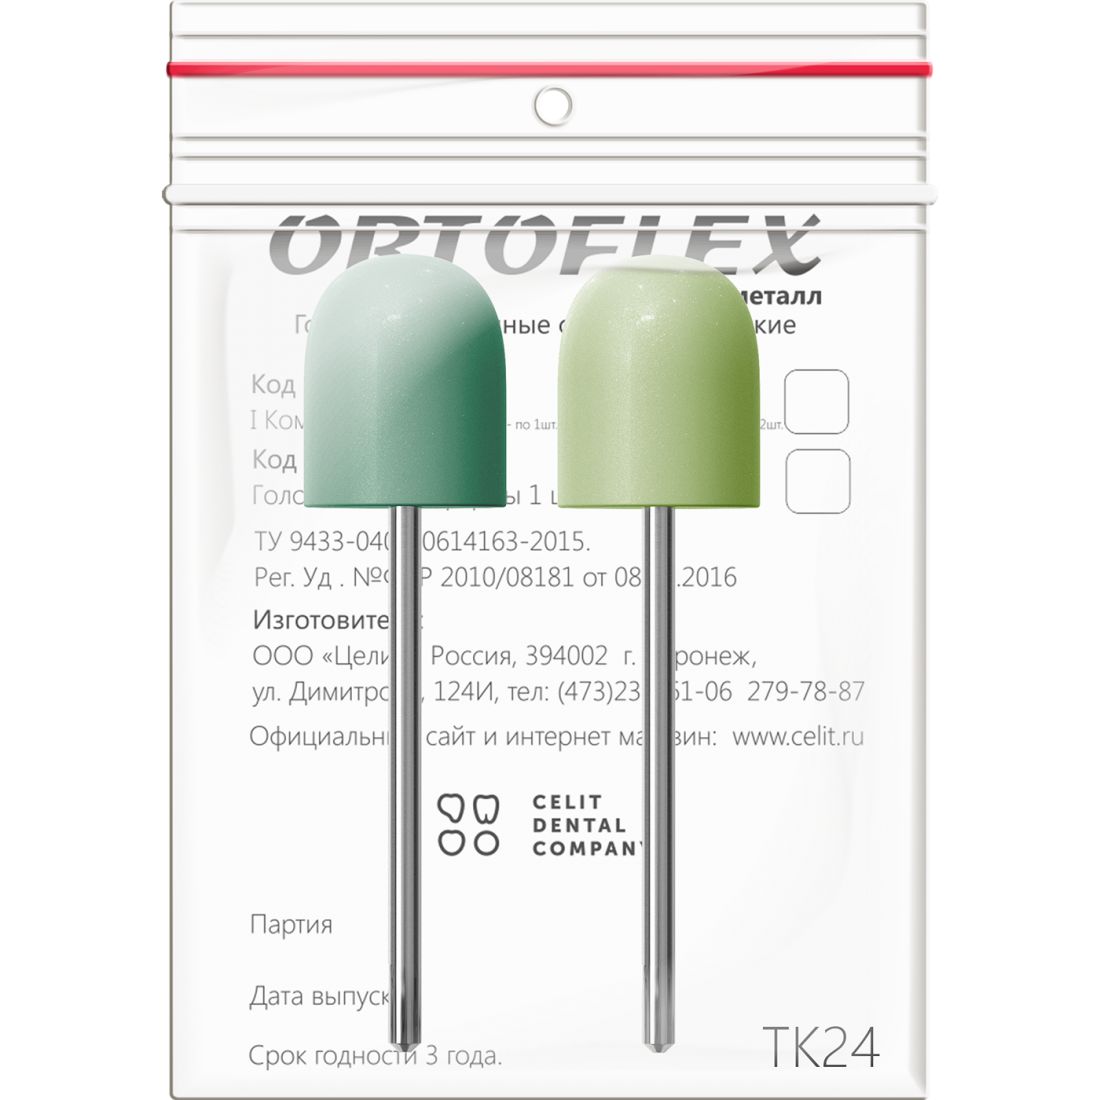 Ortoflex пластмасса ТК24, головки Ортофлекс для обработки пластмассы (2шт)